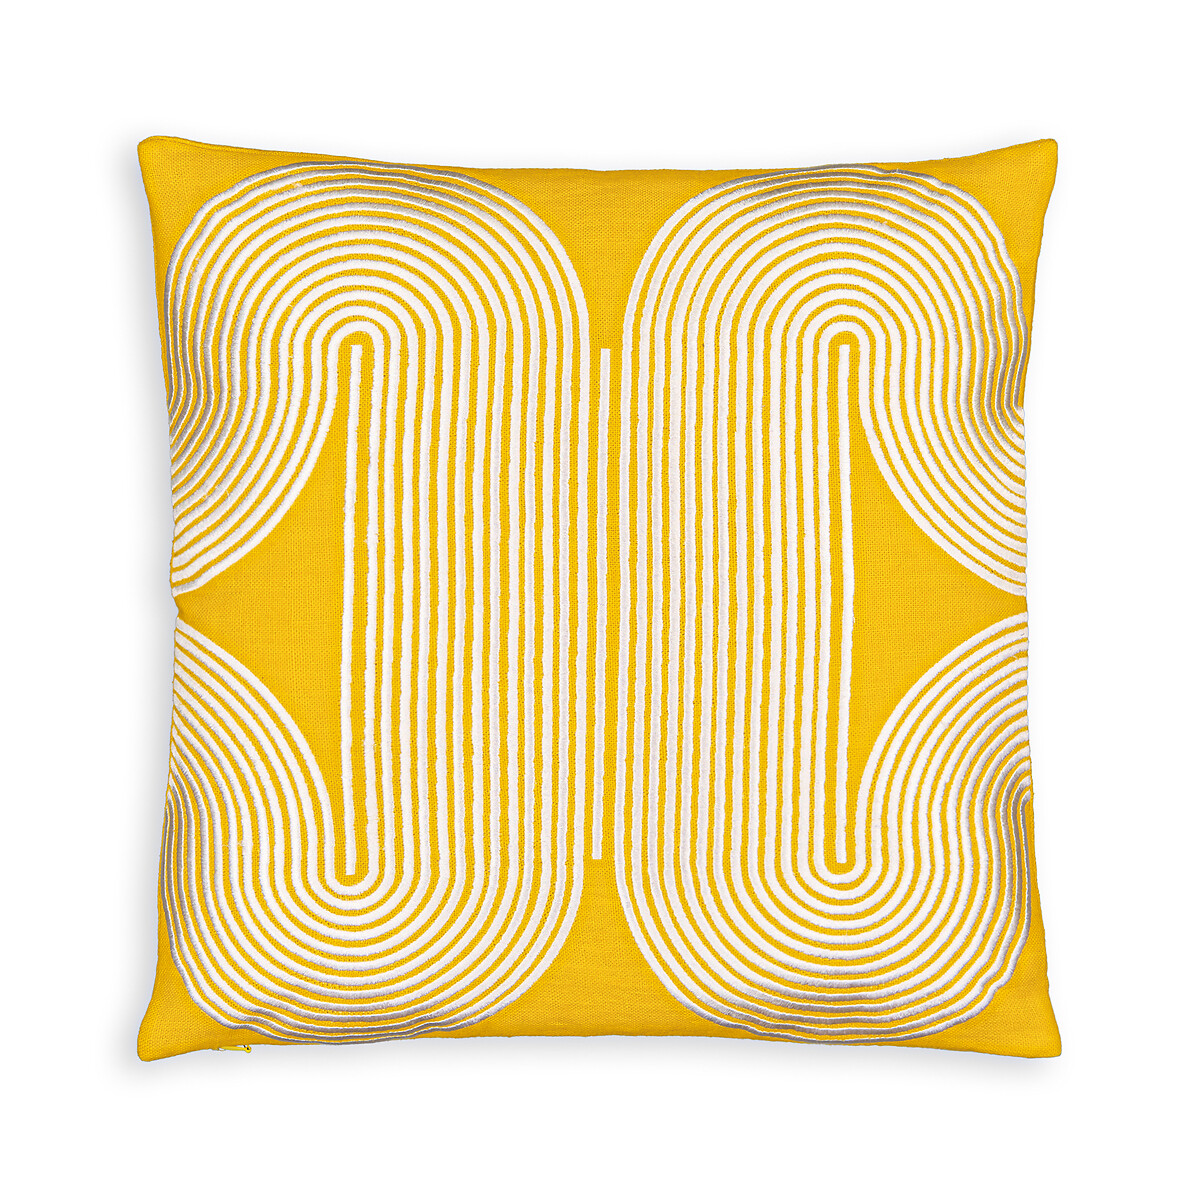 Чехол На подушку из льна Rialto 45 x 45 см желтый